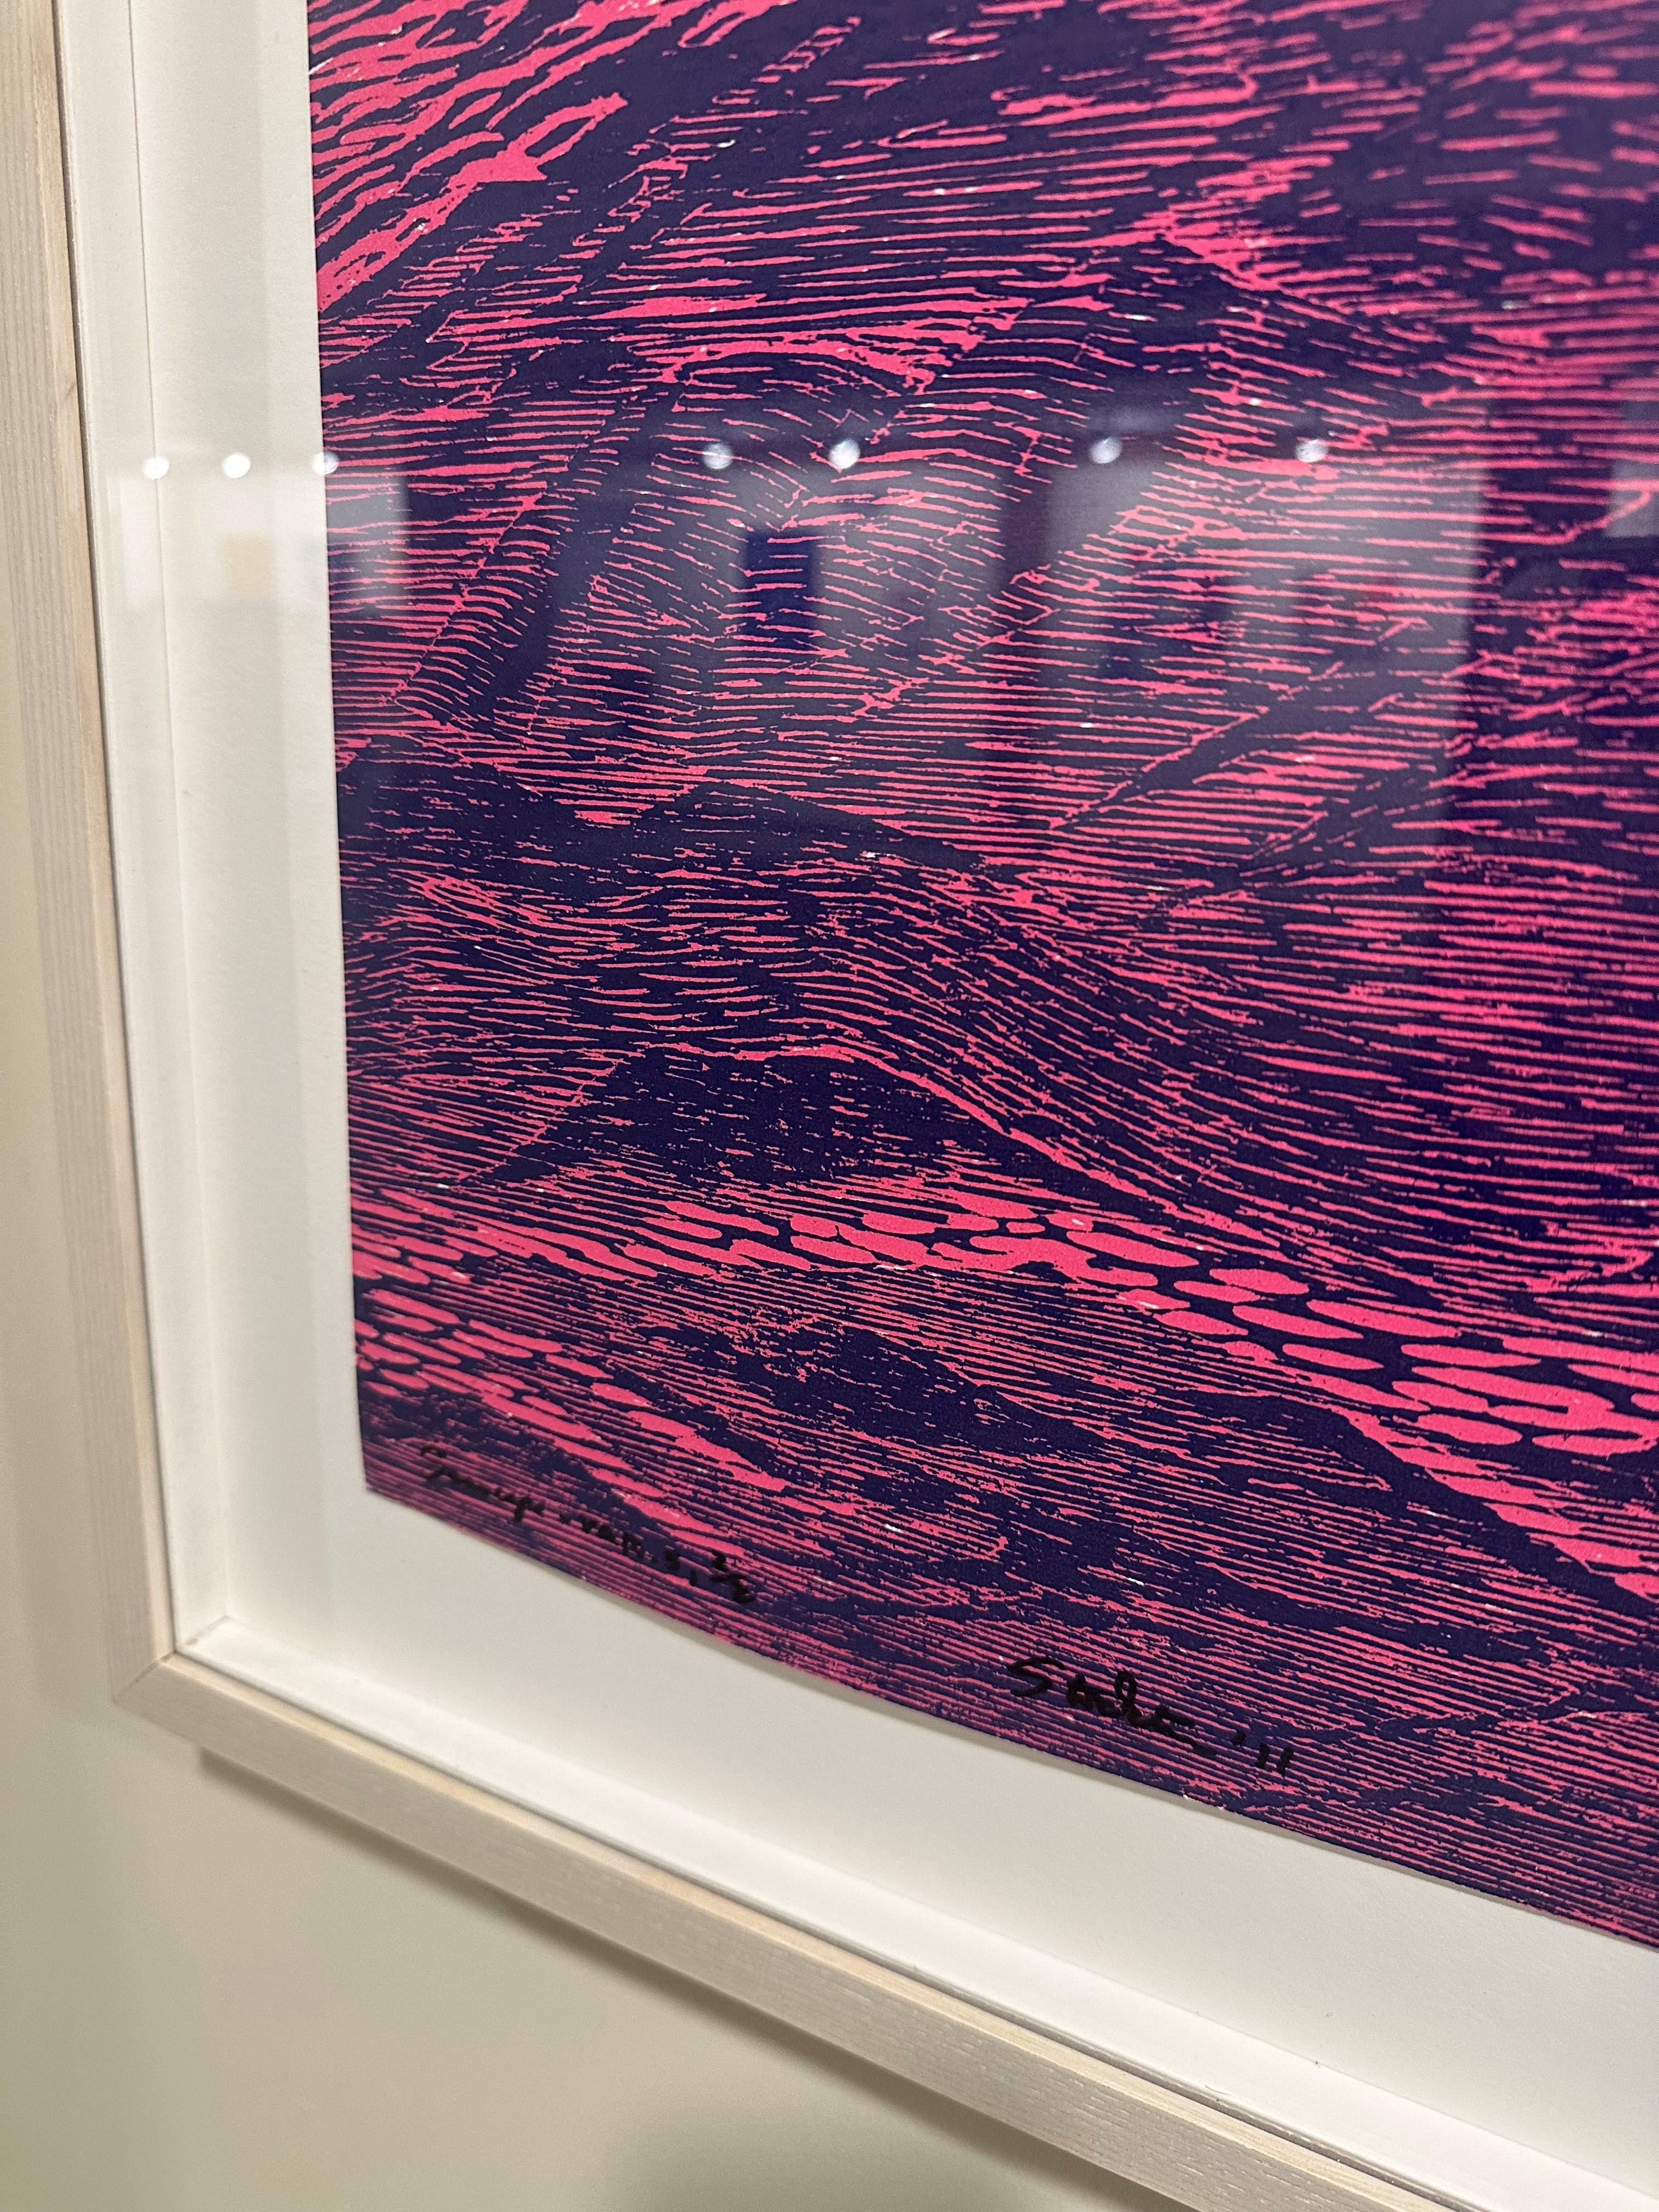 Dieser Holzschnitt erinnert an die Ruhe der Meereswellen, die in leuchtendem Pink und tiefem Kobaltblau dargestellt sind. Er erinnert an die Tradition der japanischen Druckkunst und ist gleichzeitig ausgesprochen modern. 

Auflage 2/2. Rückseitig